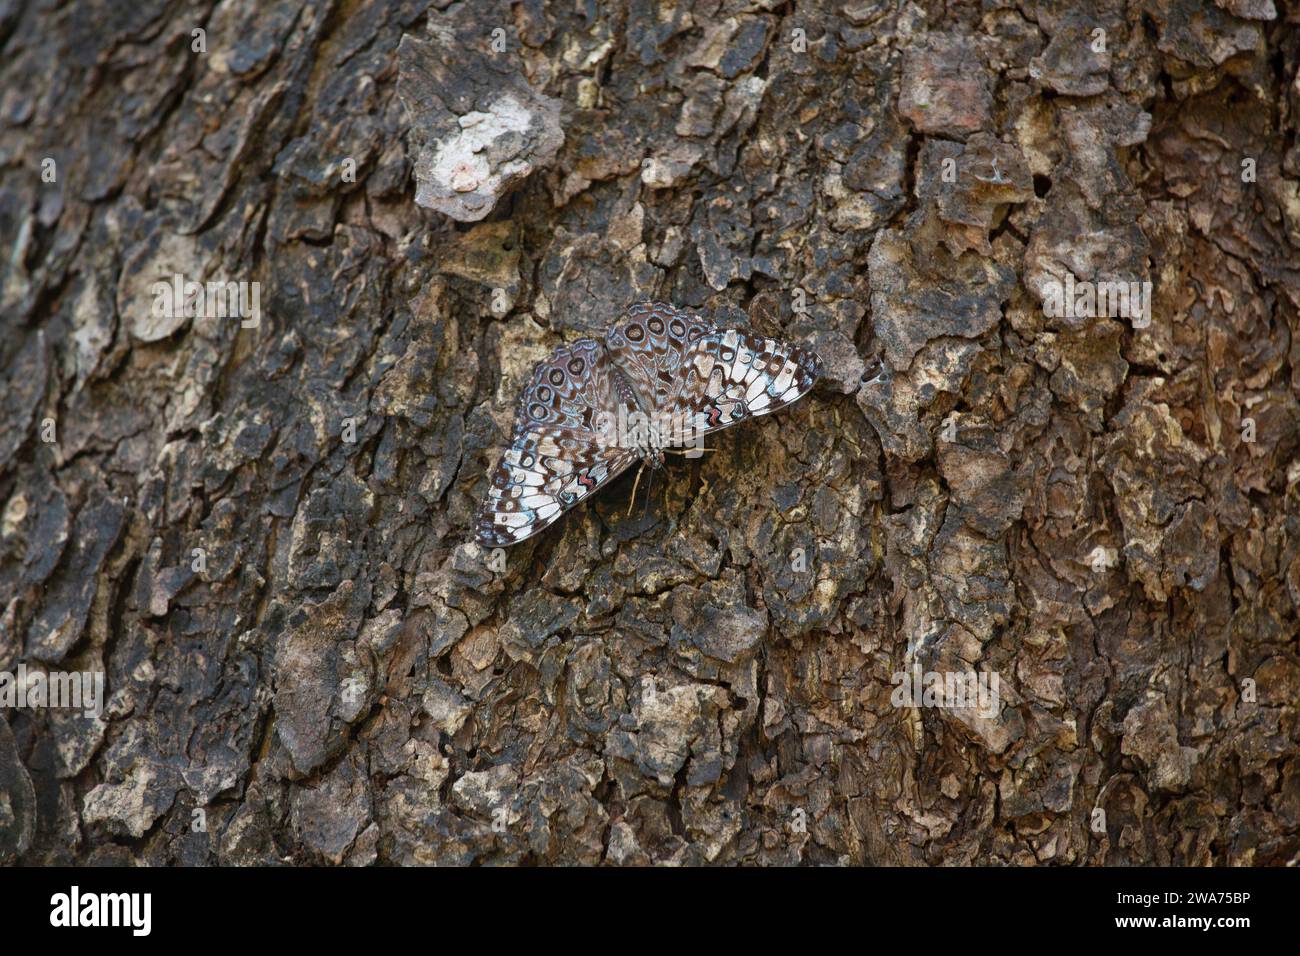 Farfalla grigia cracker (Hamadryas februa) mimetizzata sulla corteccia degli alberi. Parco nazionale del Palo Verde, Costa Rica. Foto Stock